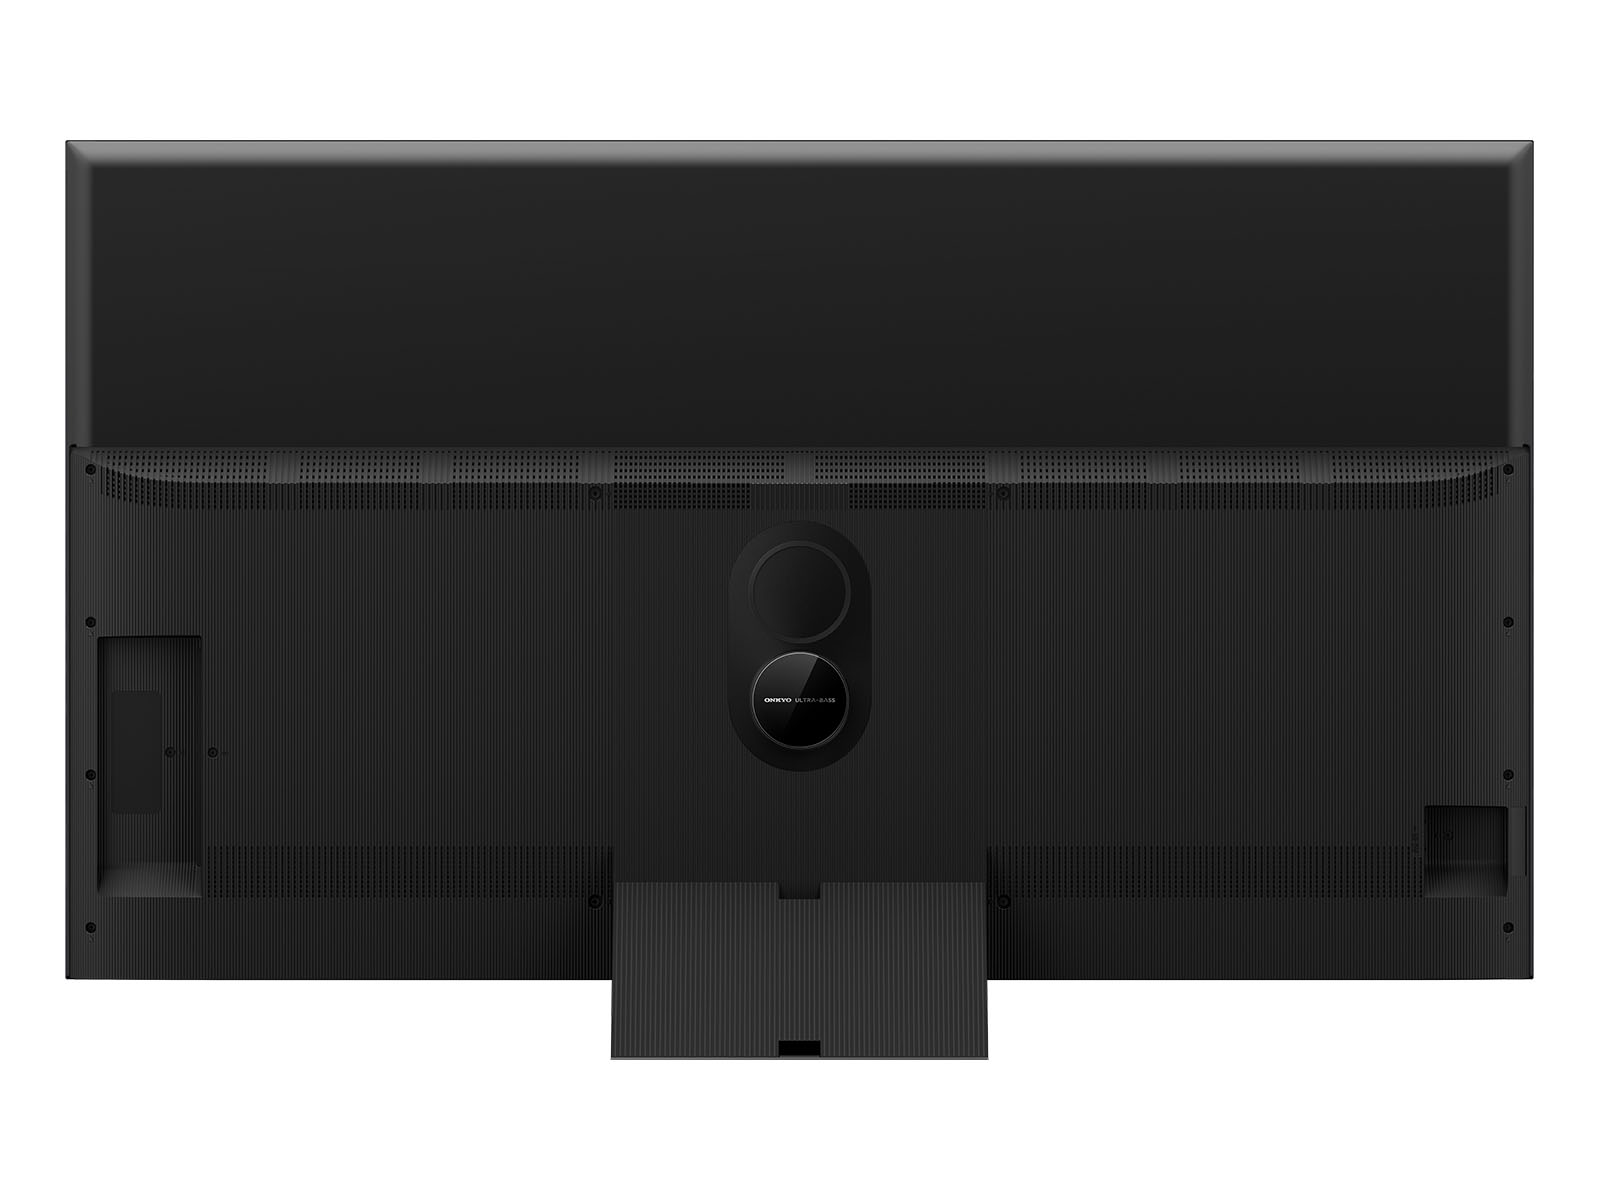 65″ C845 Mini LED 4K Google TV - Model 65C845